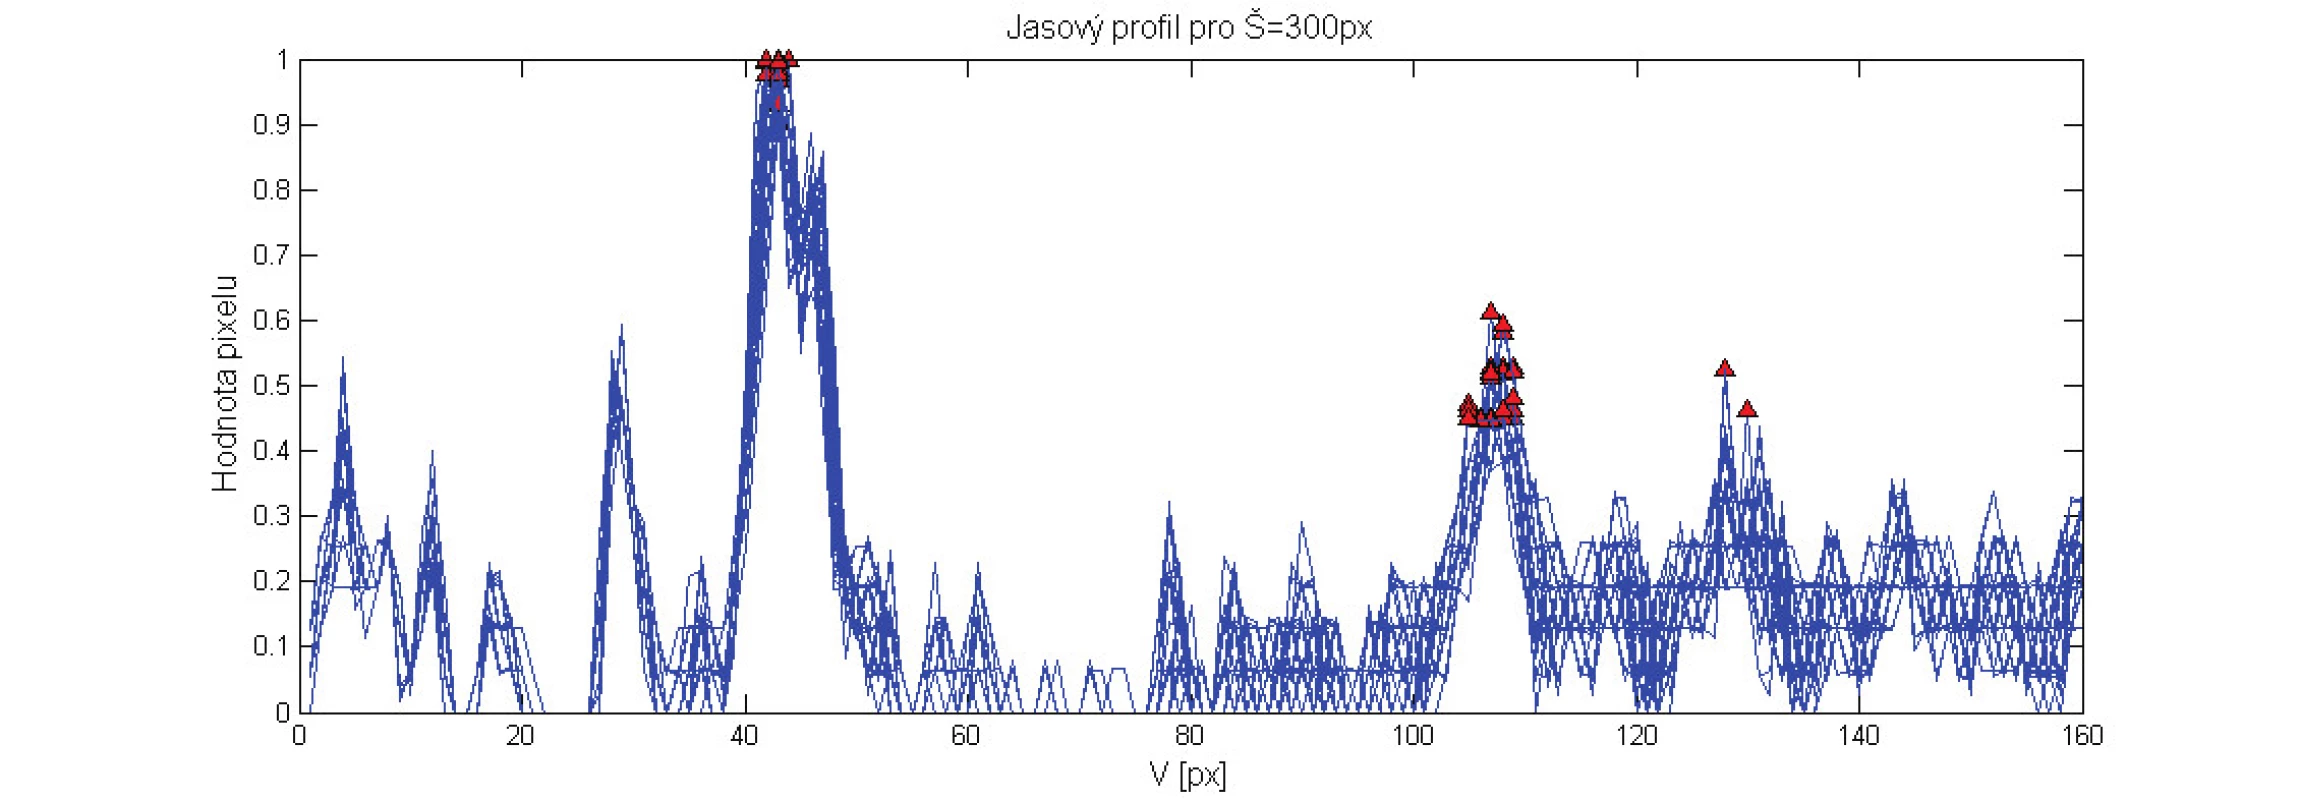 Jasové profily v celé sekvenci obrazů získané ve směru kolmém na cévní stěnu (řádky H = &lt;1;256&gt;; sloupec W = 300 px obrazu) s vyznačenými maximy dvojic píků (červená značka).